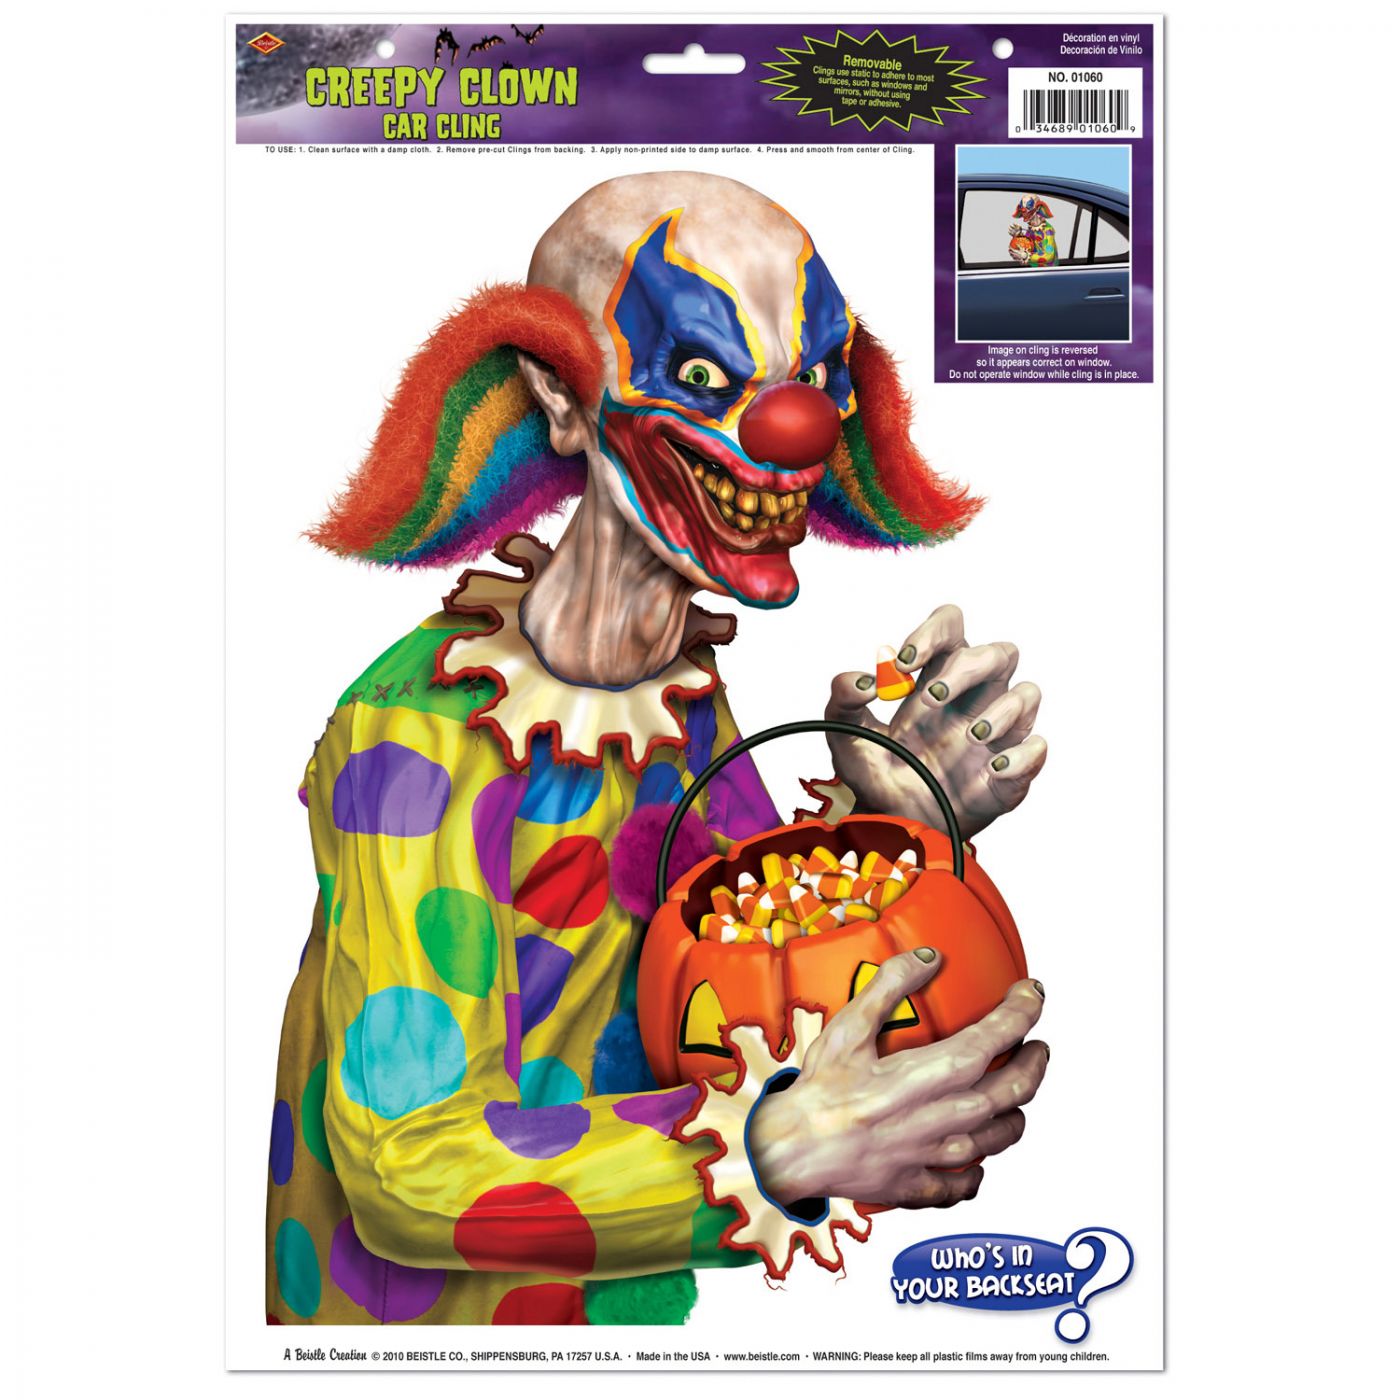 Creepy Clown Car Cling image